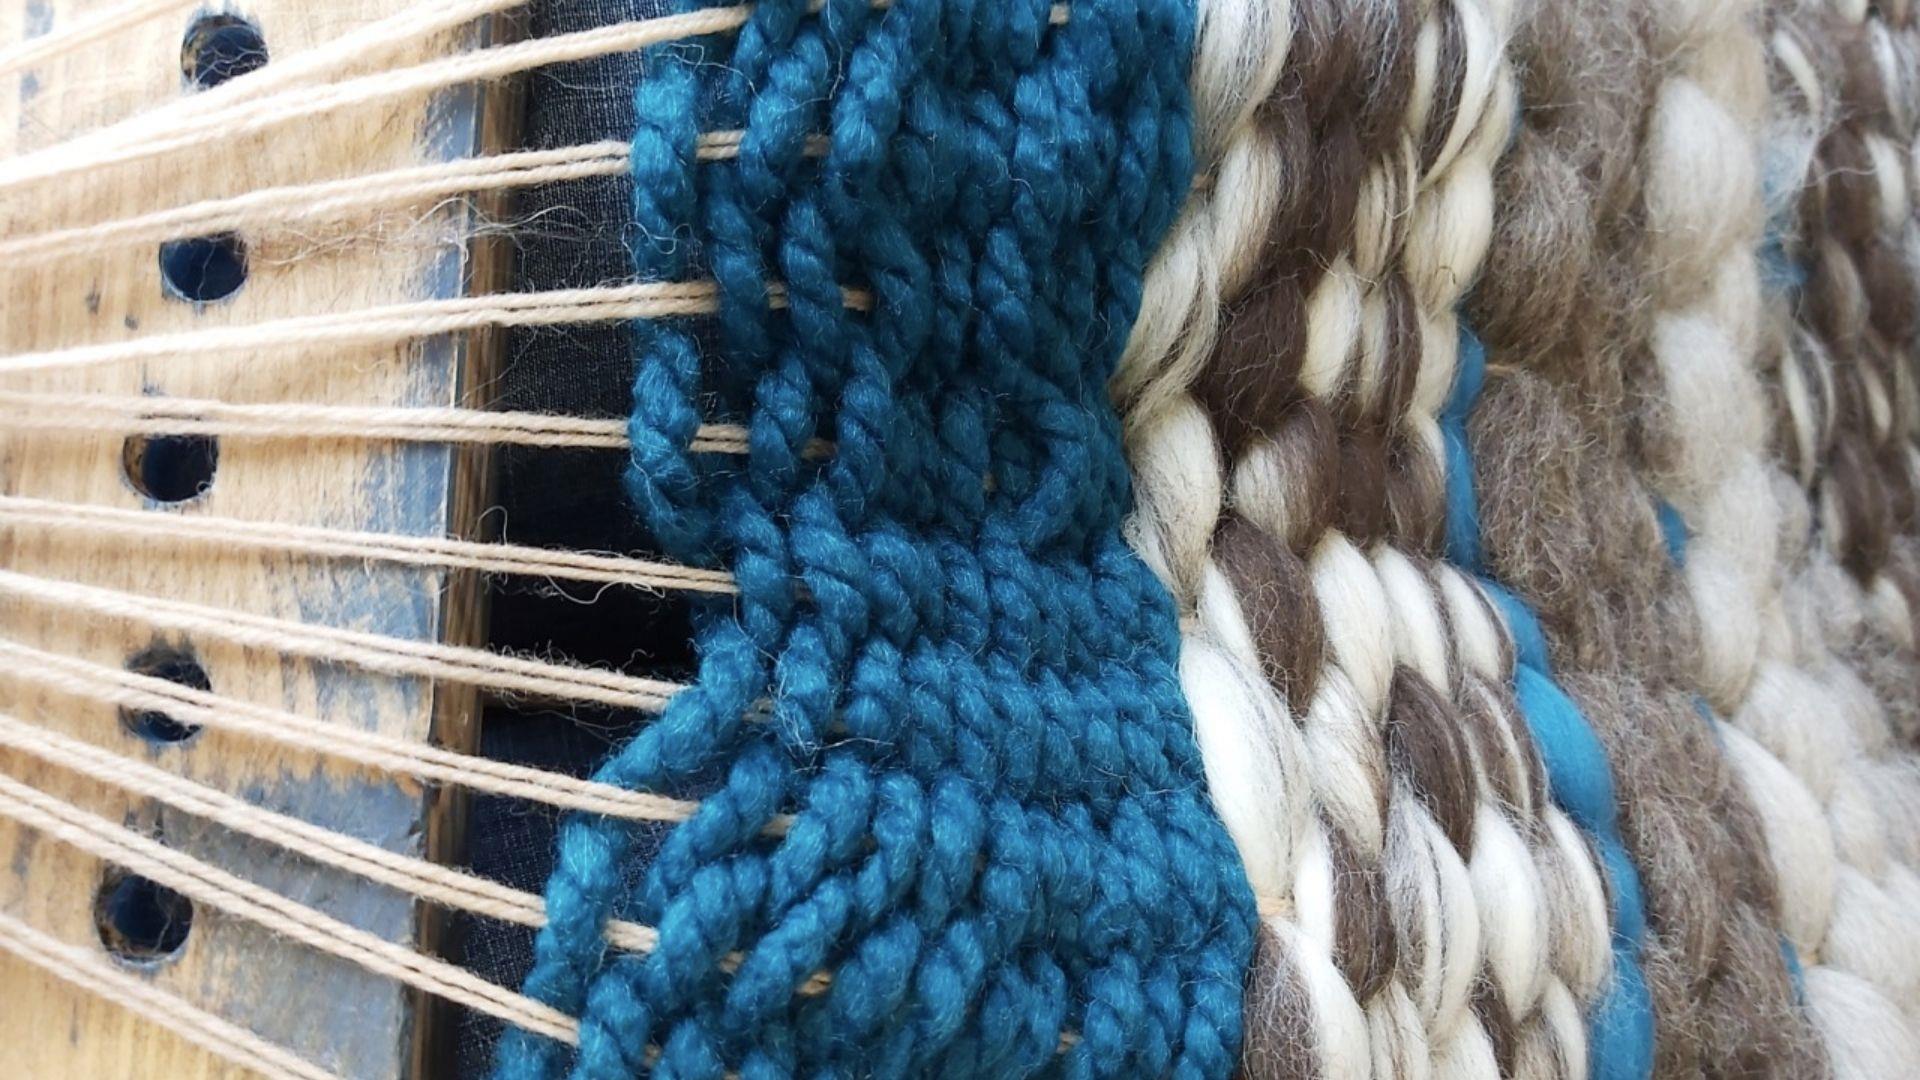 wool on a peg loom